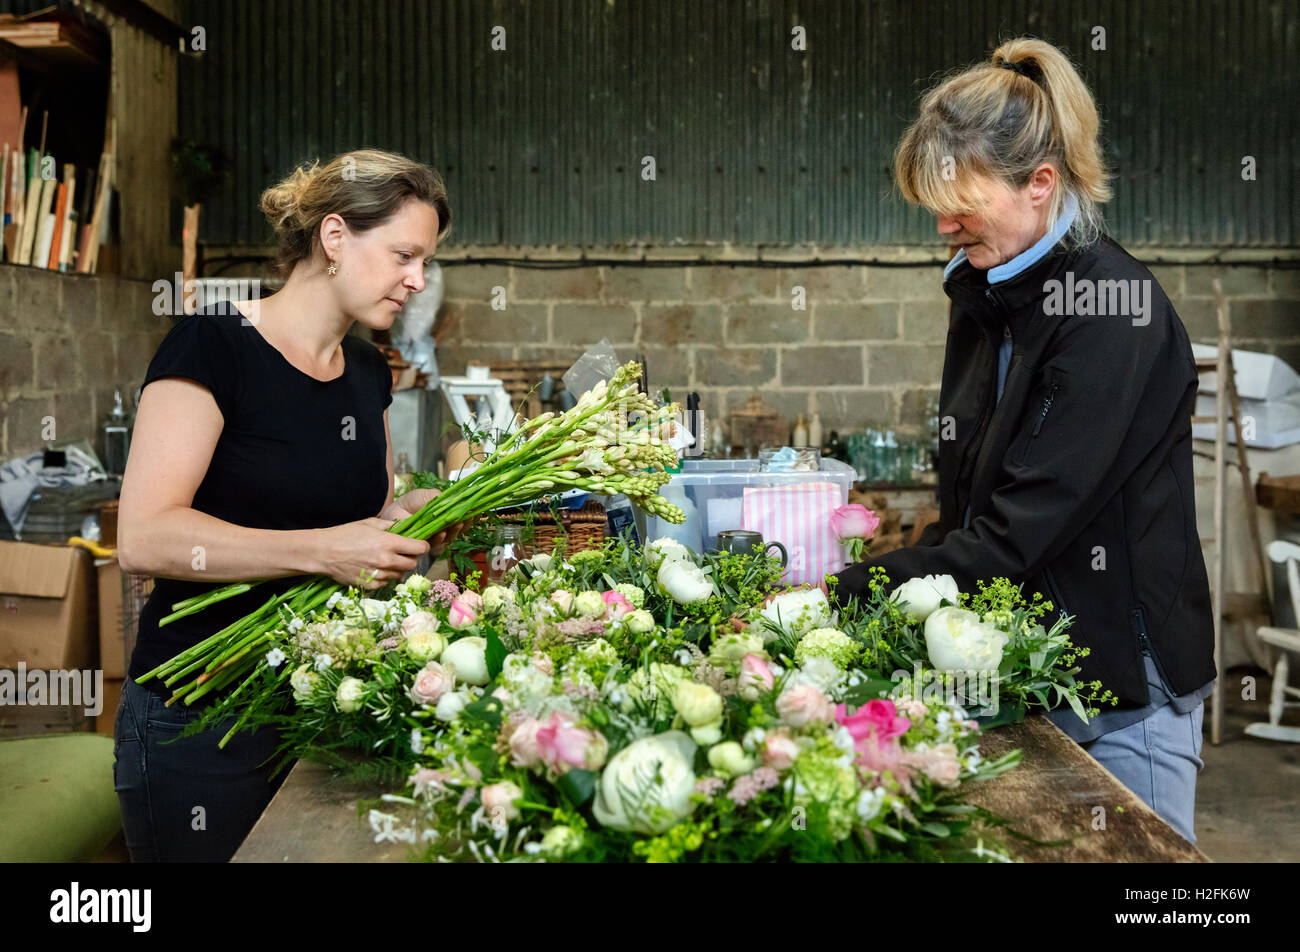 Commerciali disponendo dei fiori. Due donne in corrispondenza di un banco di lavoro creazione floreale decorazione tavola s e accordi. Foto Stock